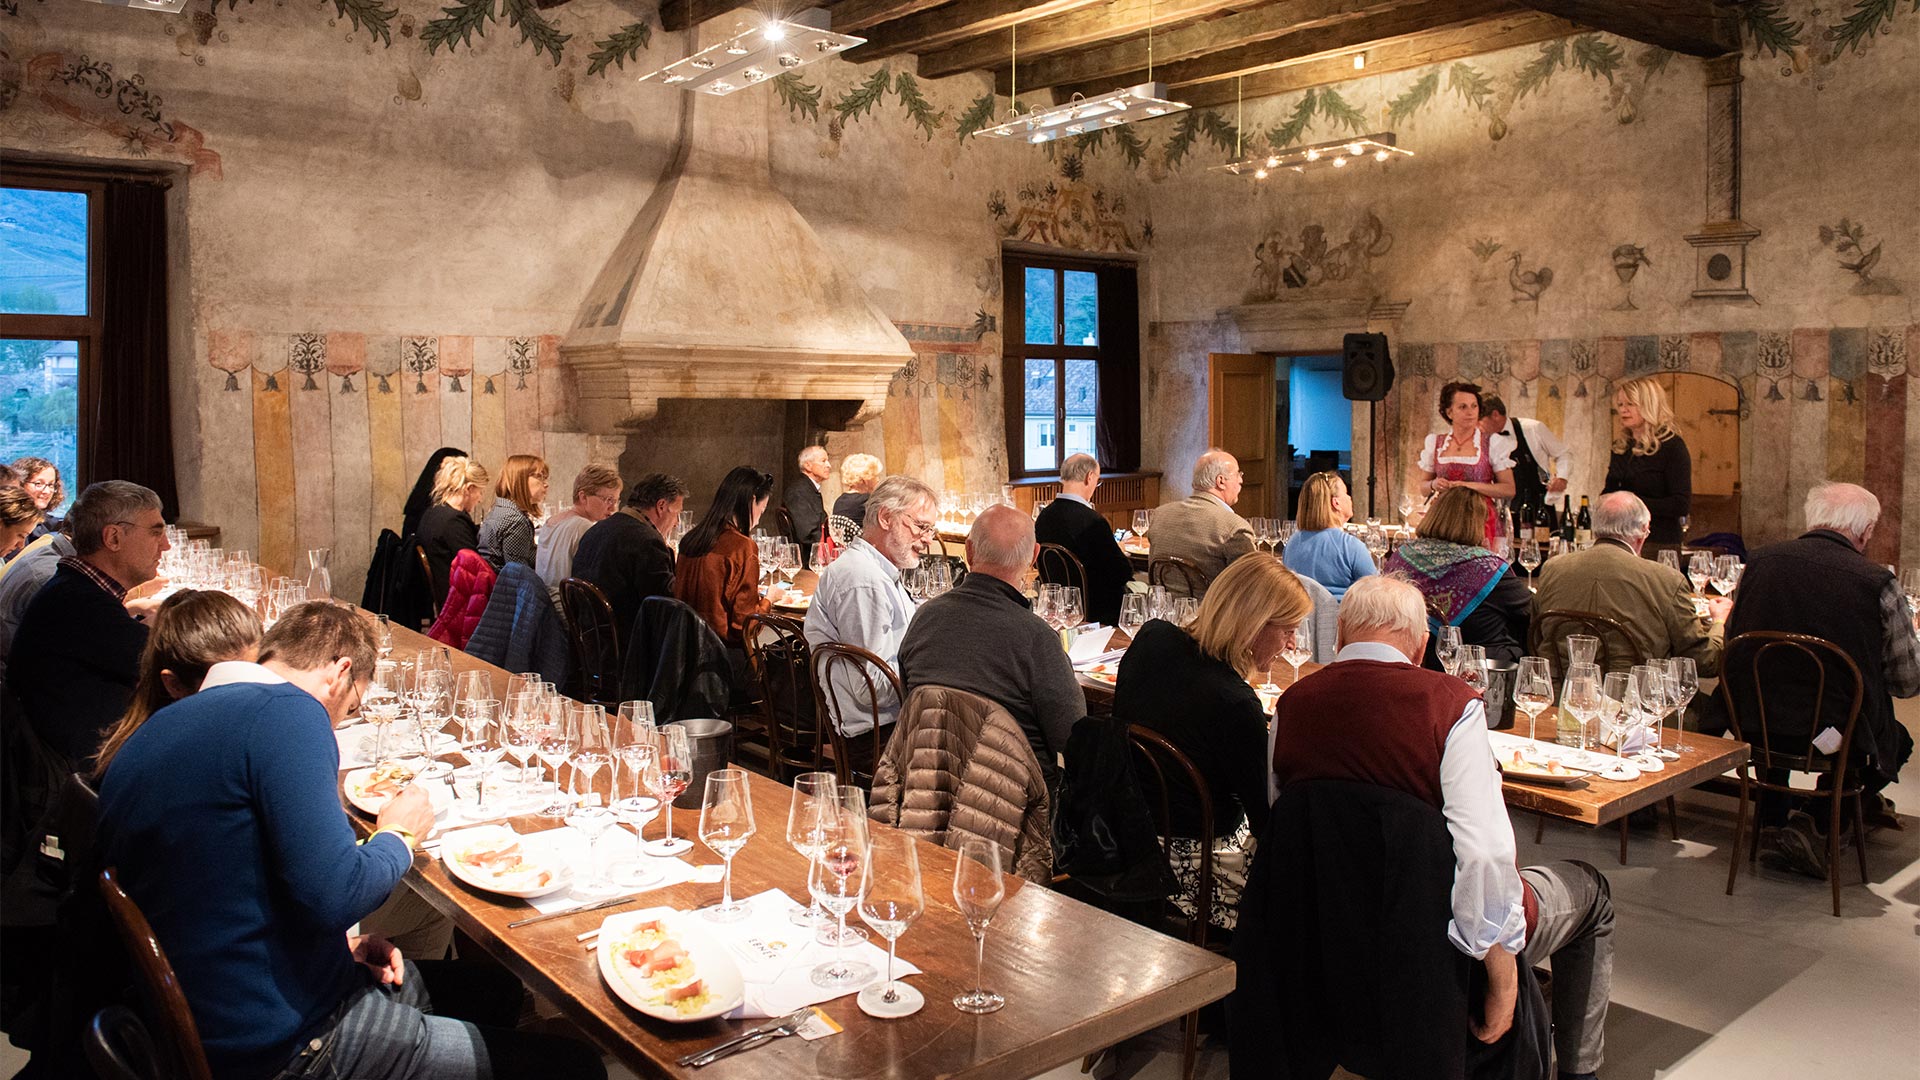 Gruppi di clienti intenti a mangiare all'interno di un ristorante tradizionale a Bolzano stanno per vedere un piccolo spettacolo organizzato dai ristoratori.